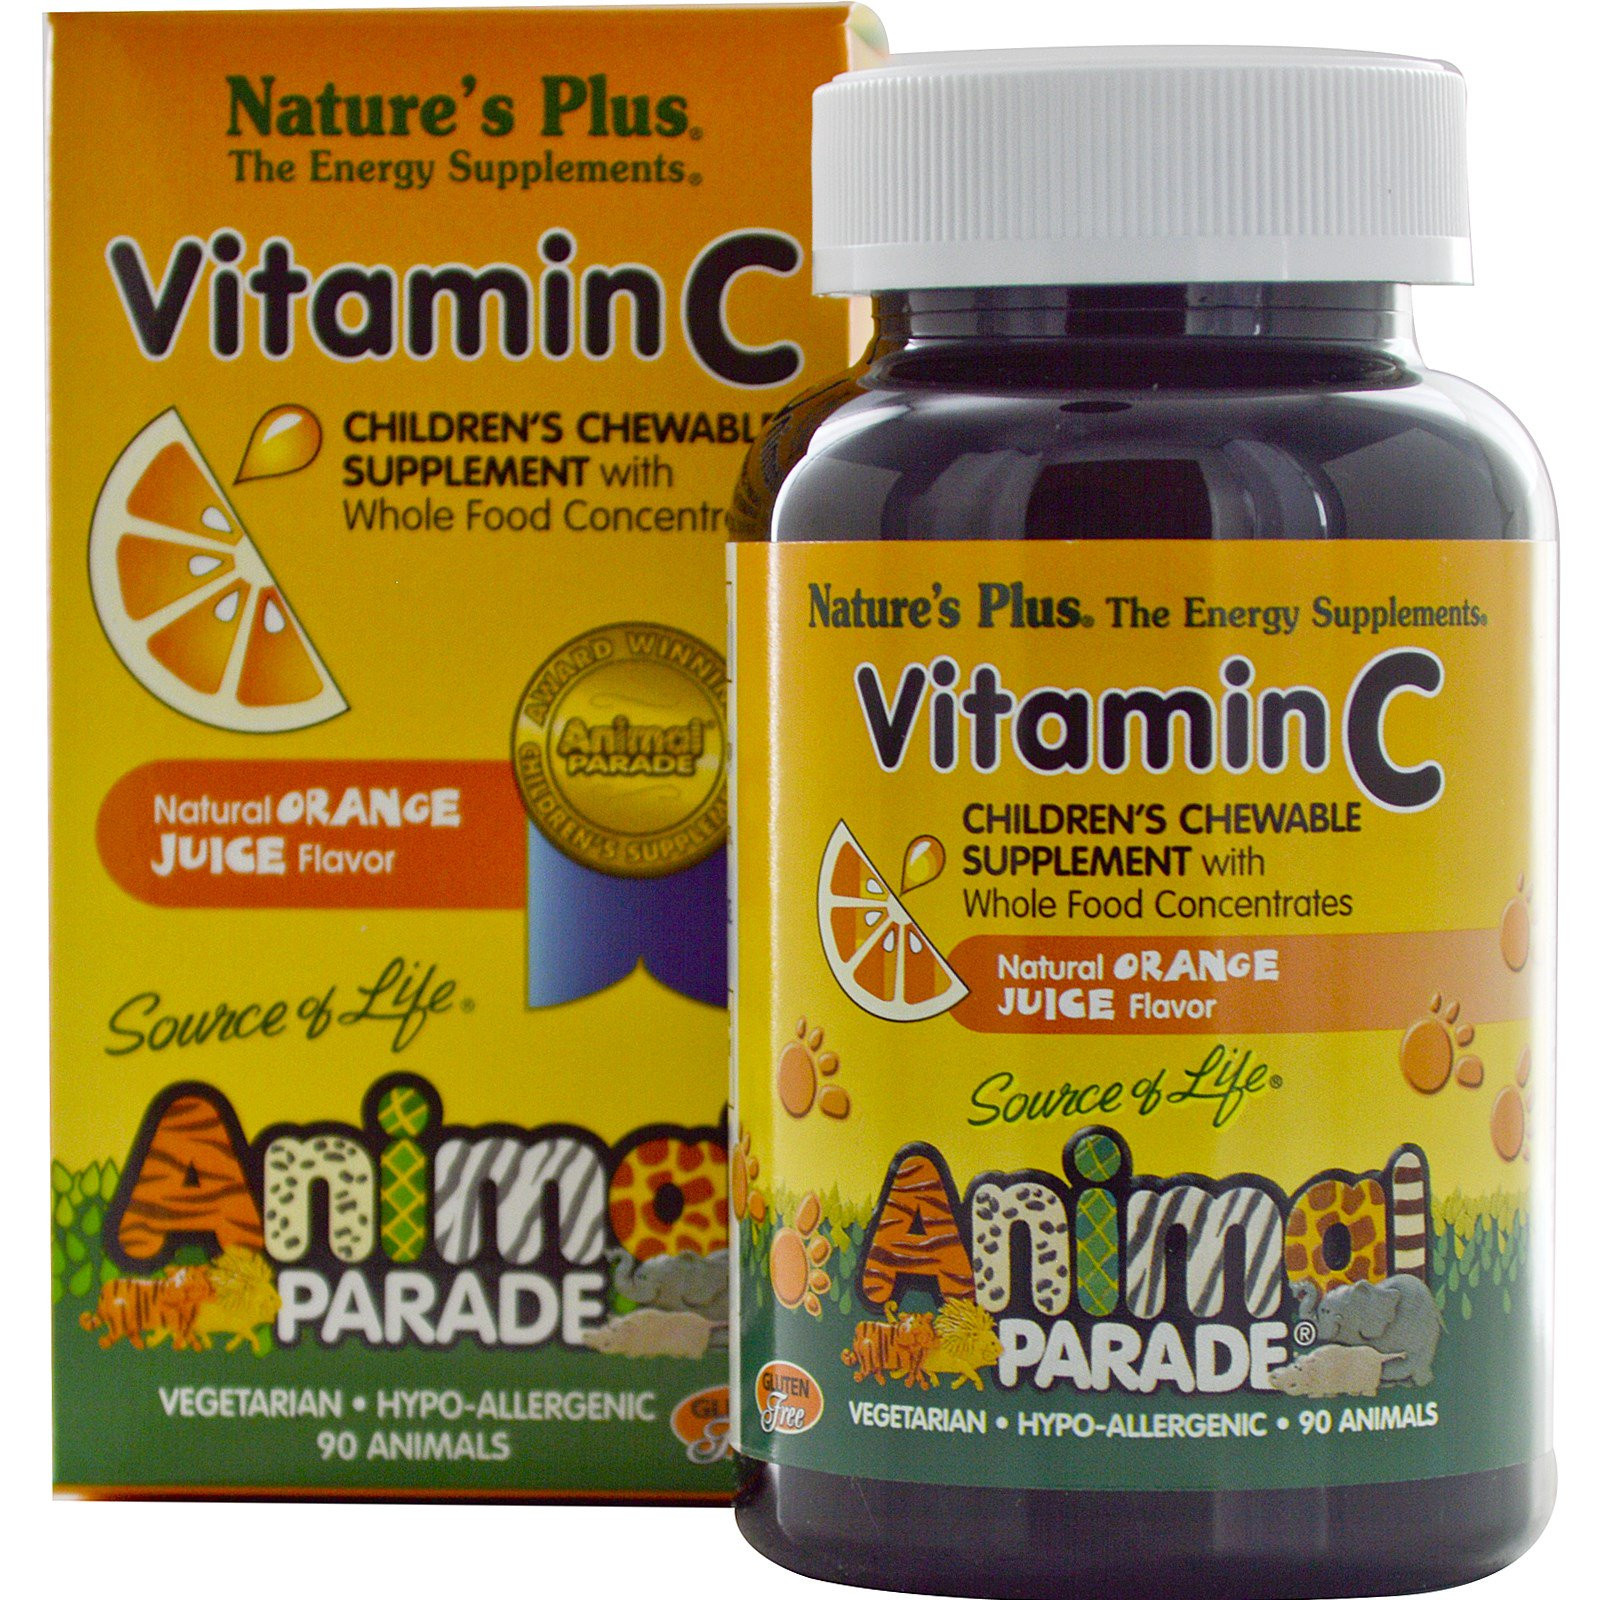 Vitamin C, Children&apos;s Chewable Supplement, Natural Orange Juice Flavor (90 Animals) - Nature&apos;s Plus